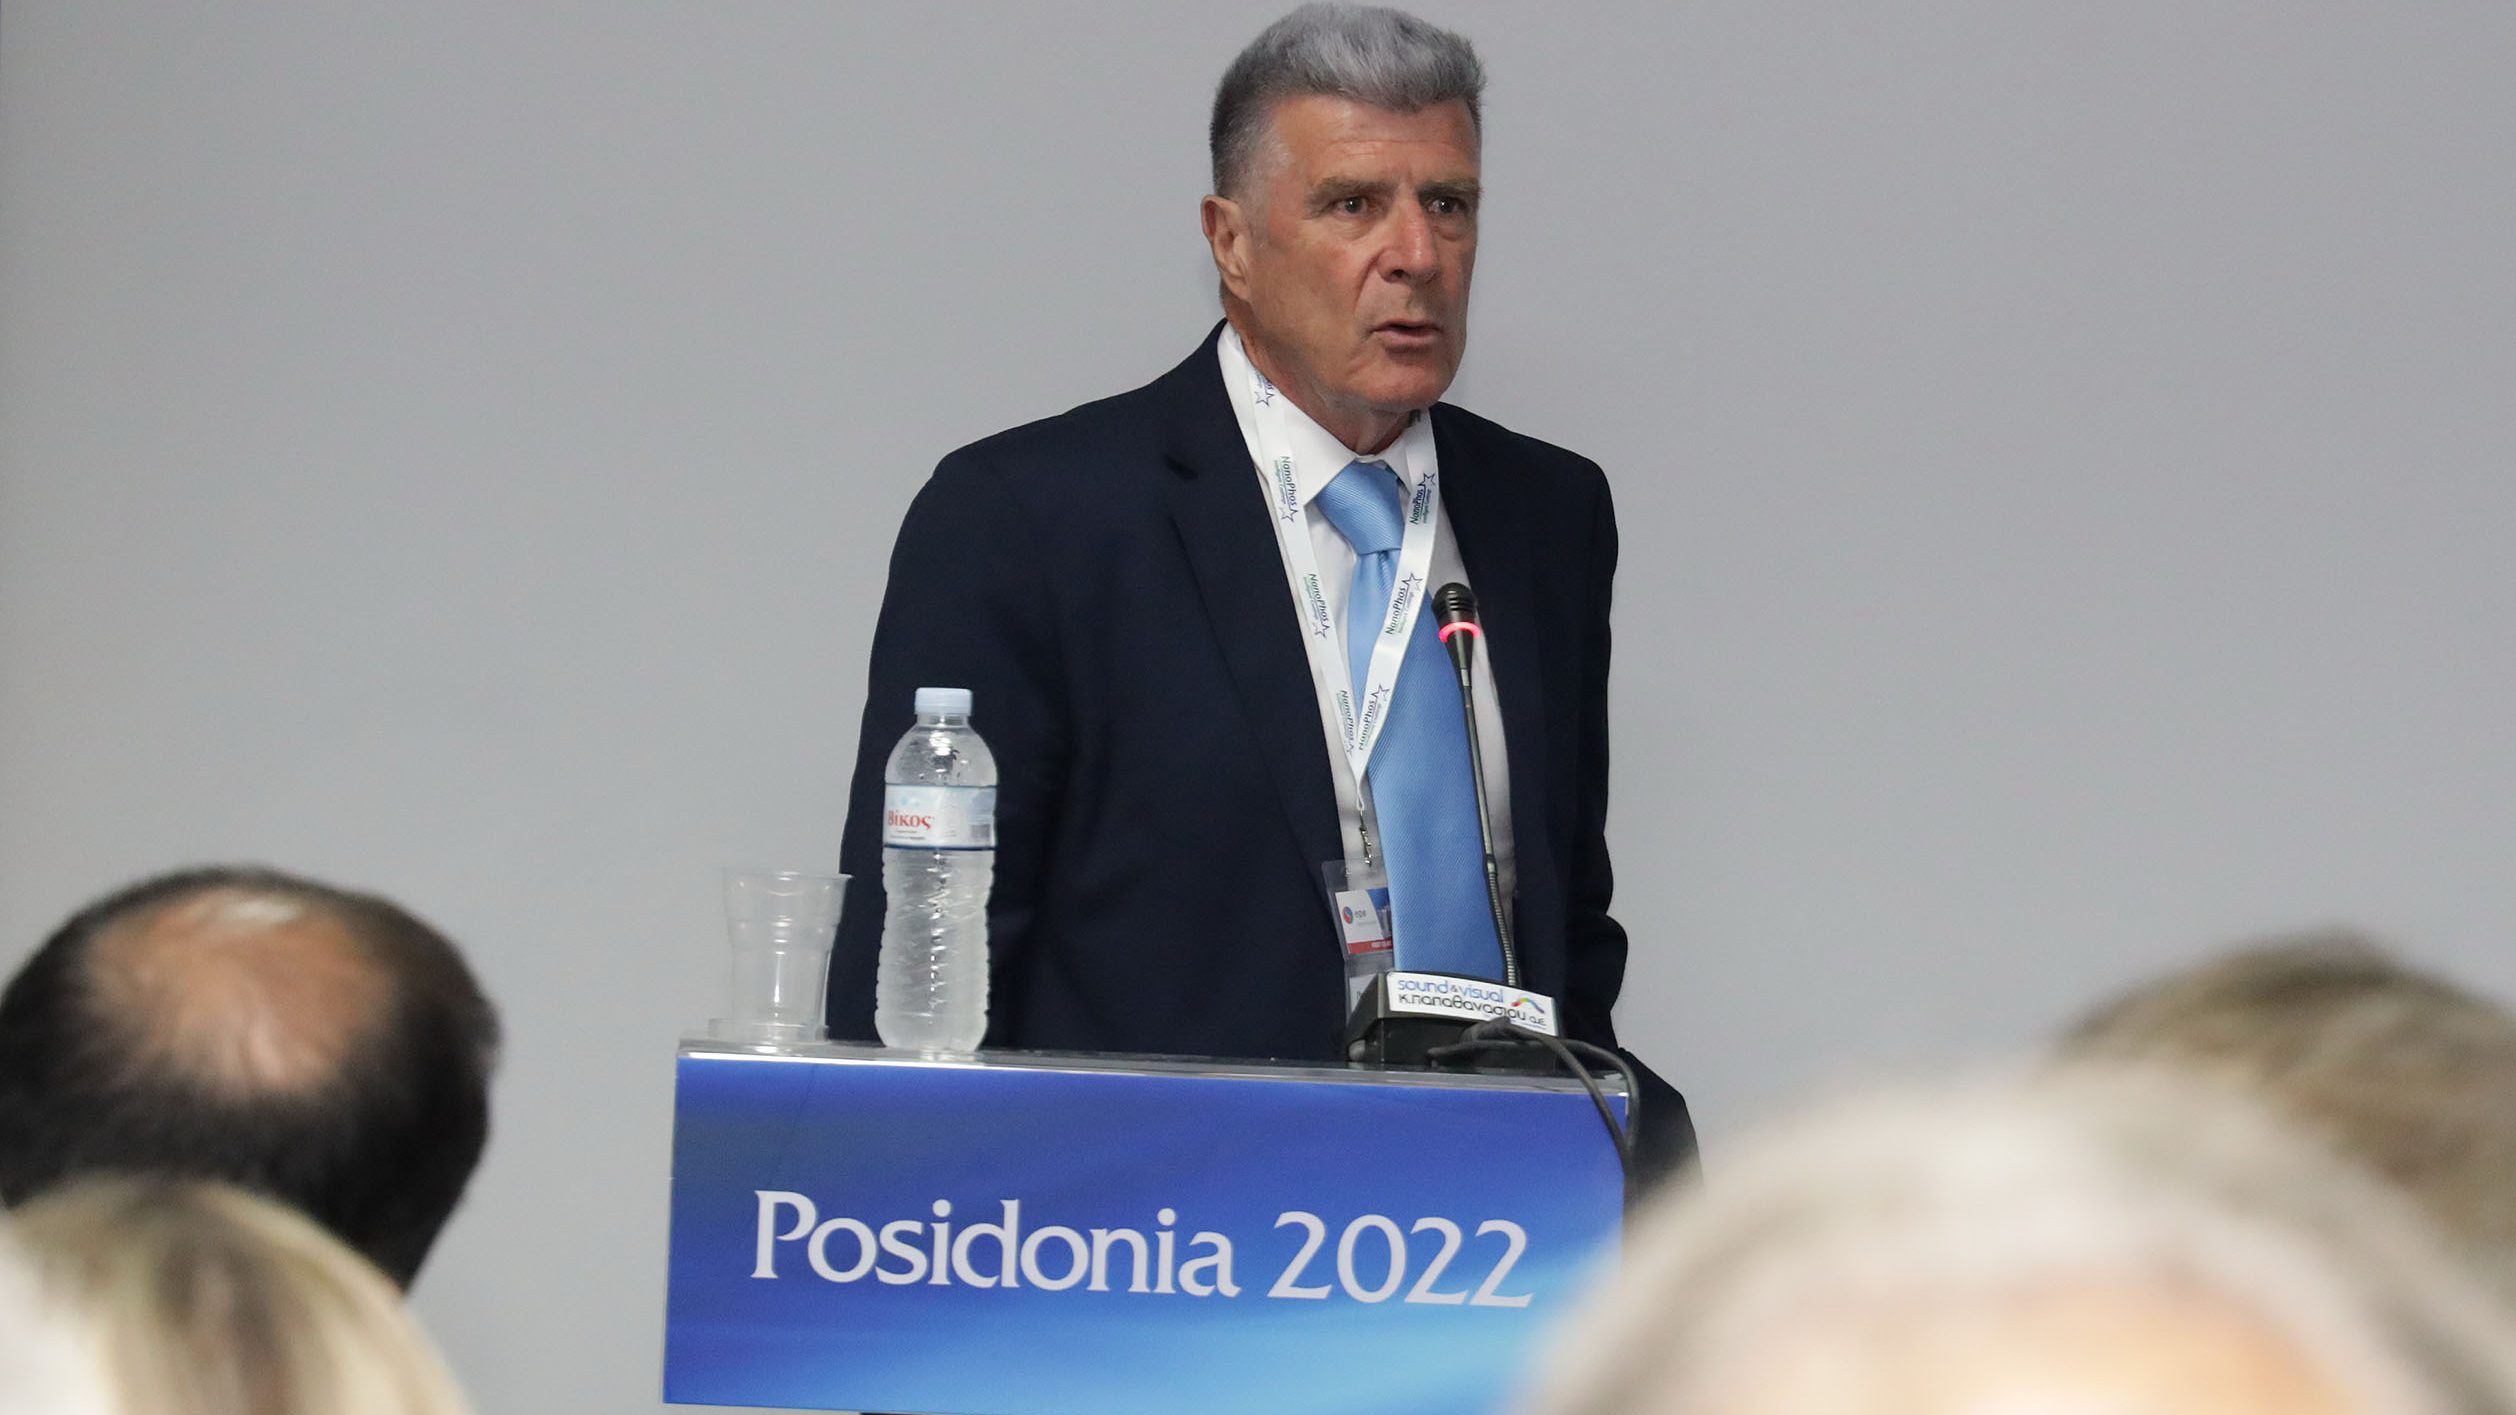 Στην έκθεση ΠΟΣΕΙΔΩΝΙΑ 2022 ο Αντιπρόεδρος Λιμενικού Ταμείου Κ. Παπαδόπουλος